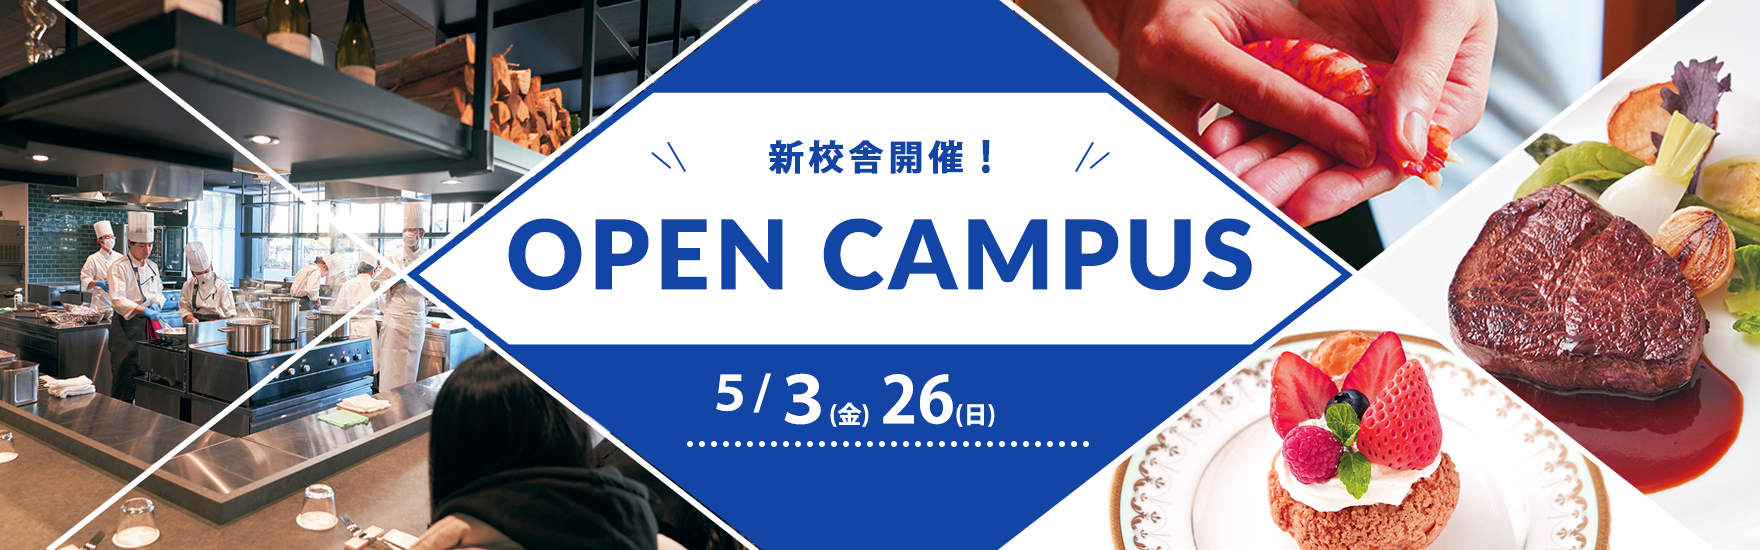 5月オープンキャンパス開催